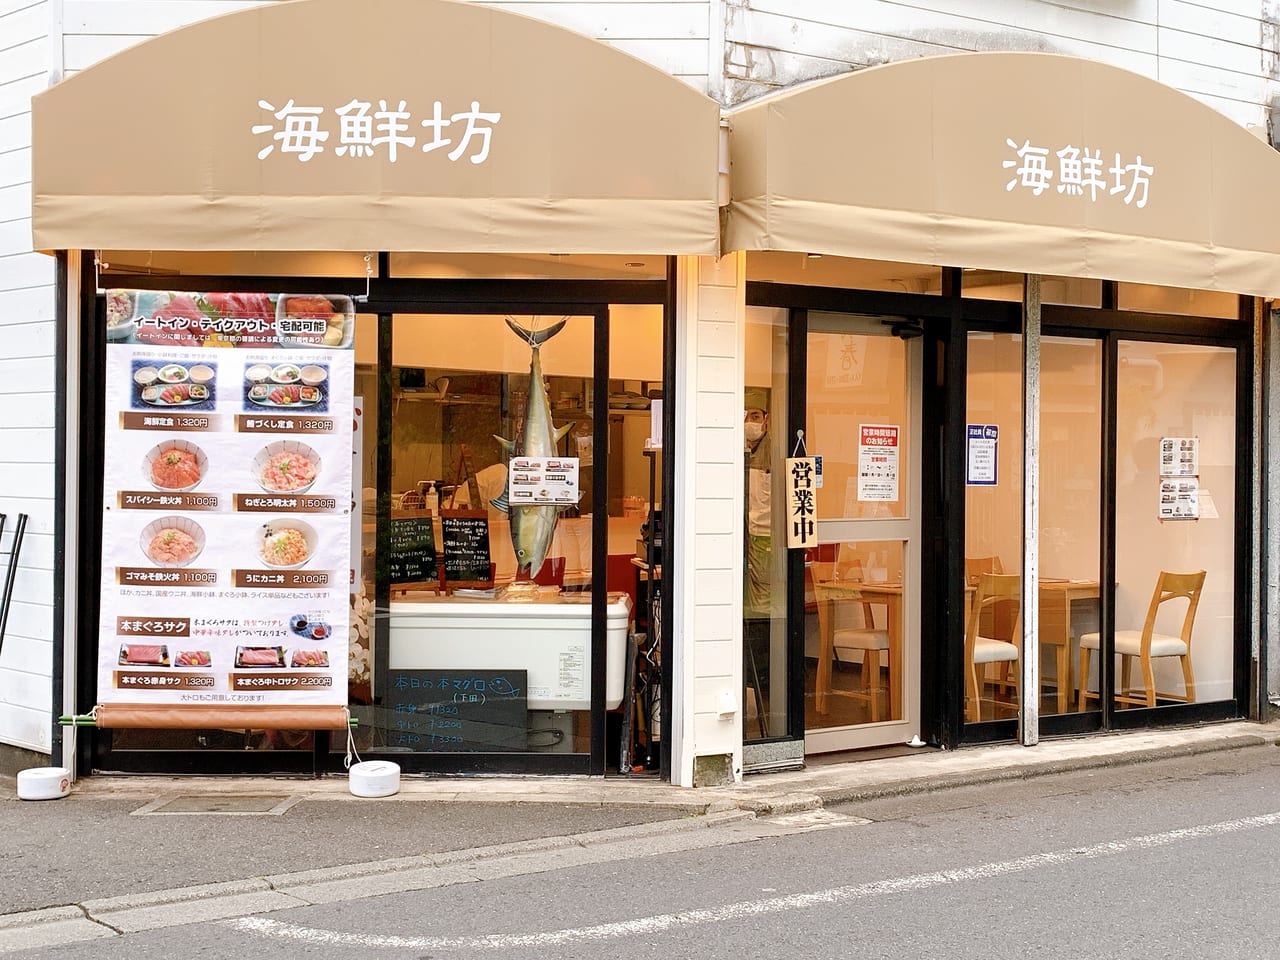 仙川駅近くに海鮮坊がオープンしていました。